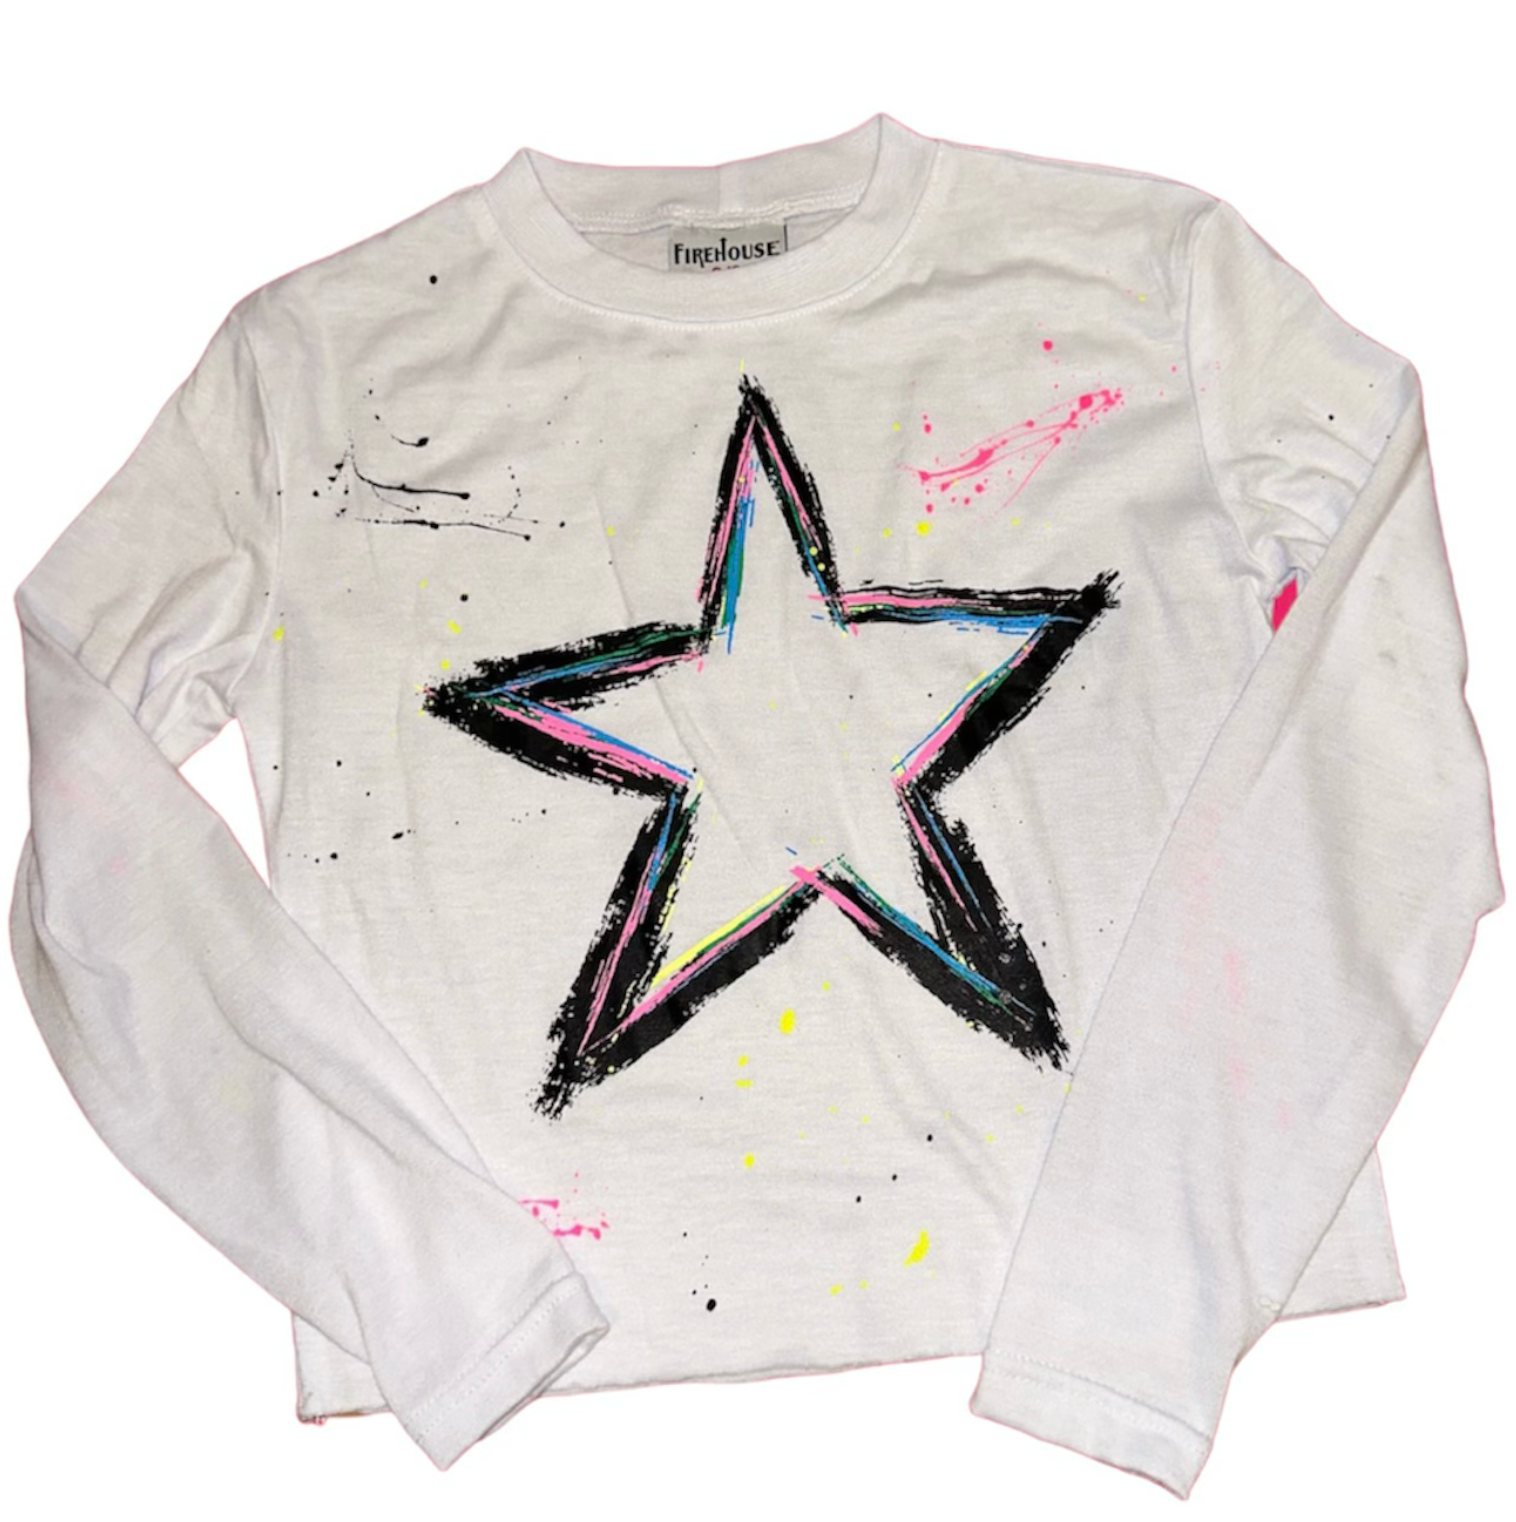 Firehouse - Splatter Star T-Shirt